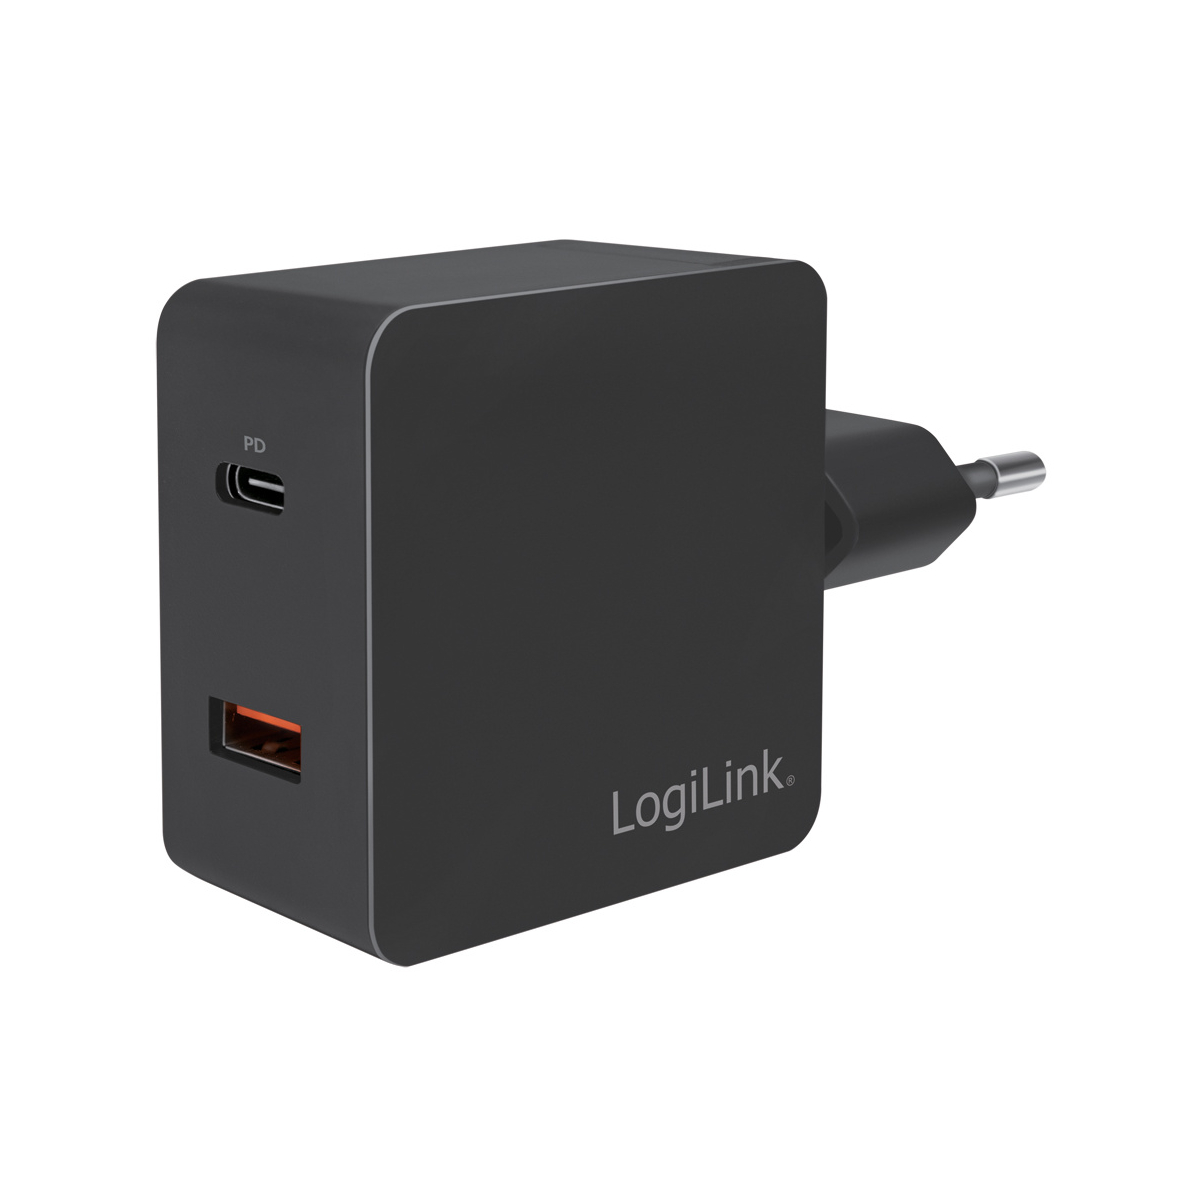 s.Abb. PD LOGILINK & USB-Adapterstecker USB-Adapterstecker,USB-C USB-A 1x Charge Quick Universal,